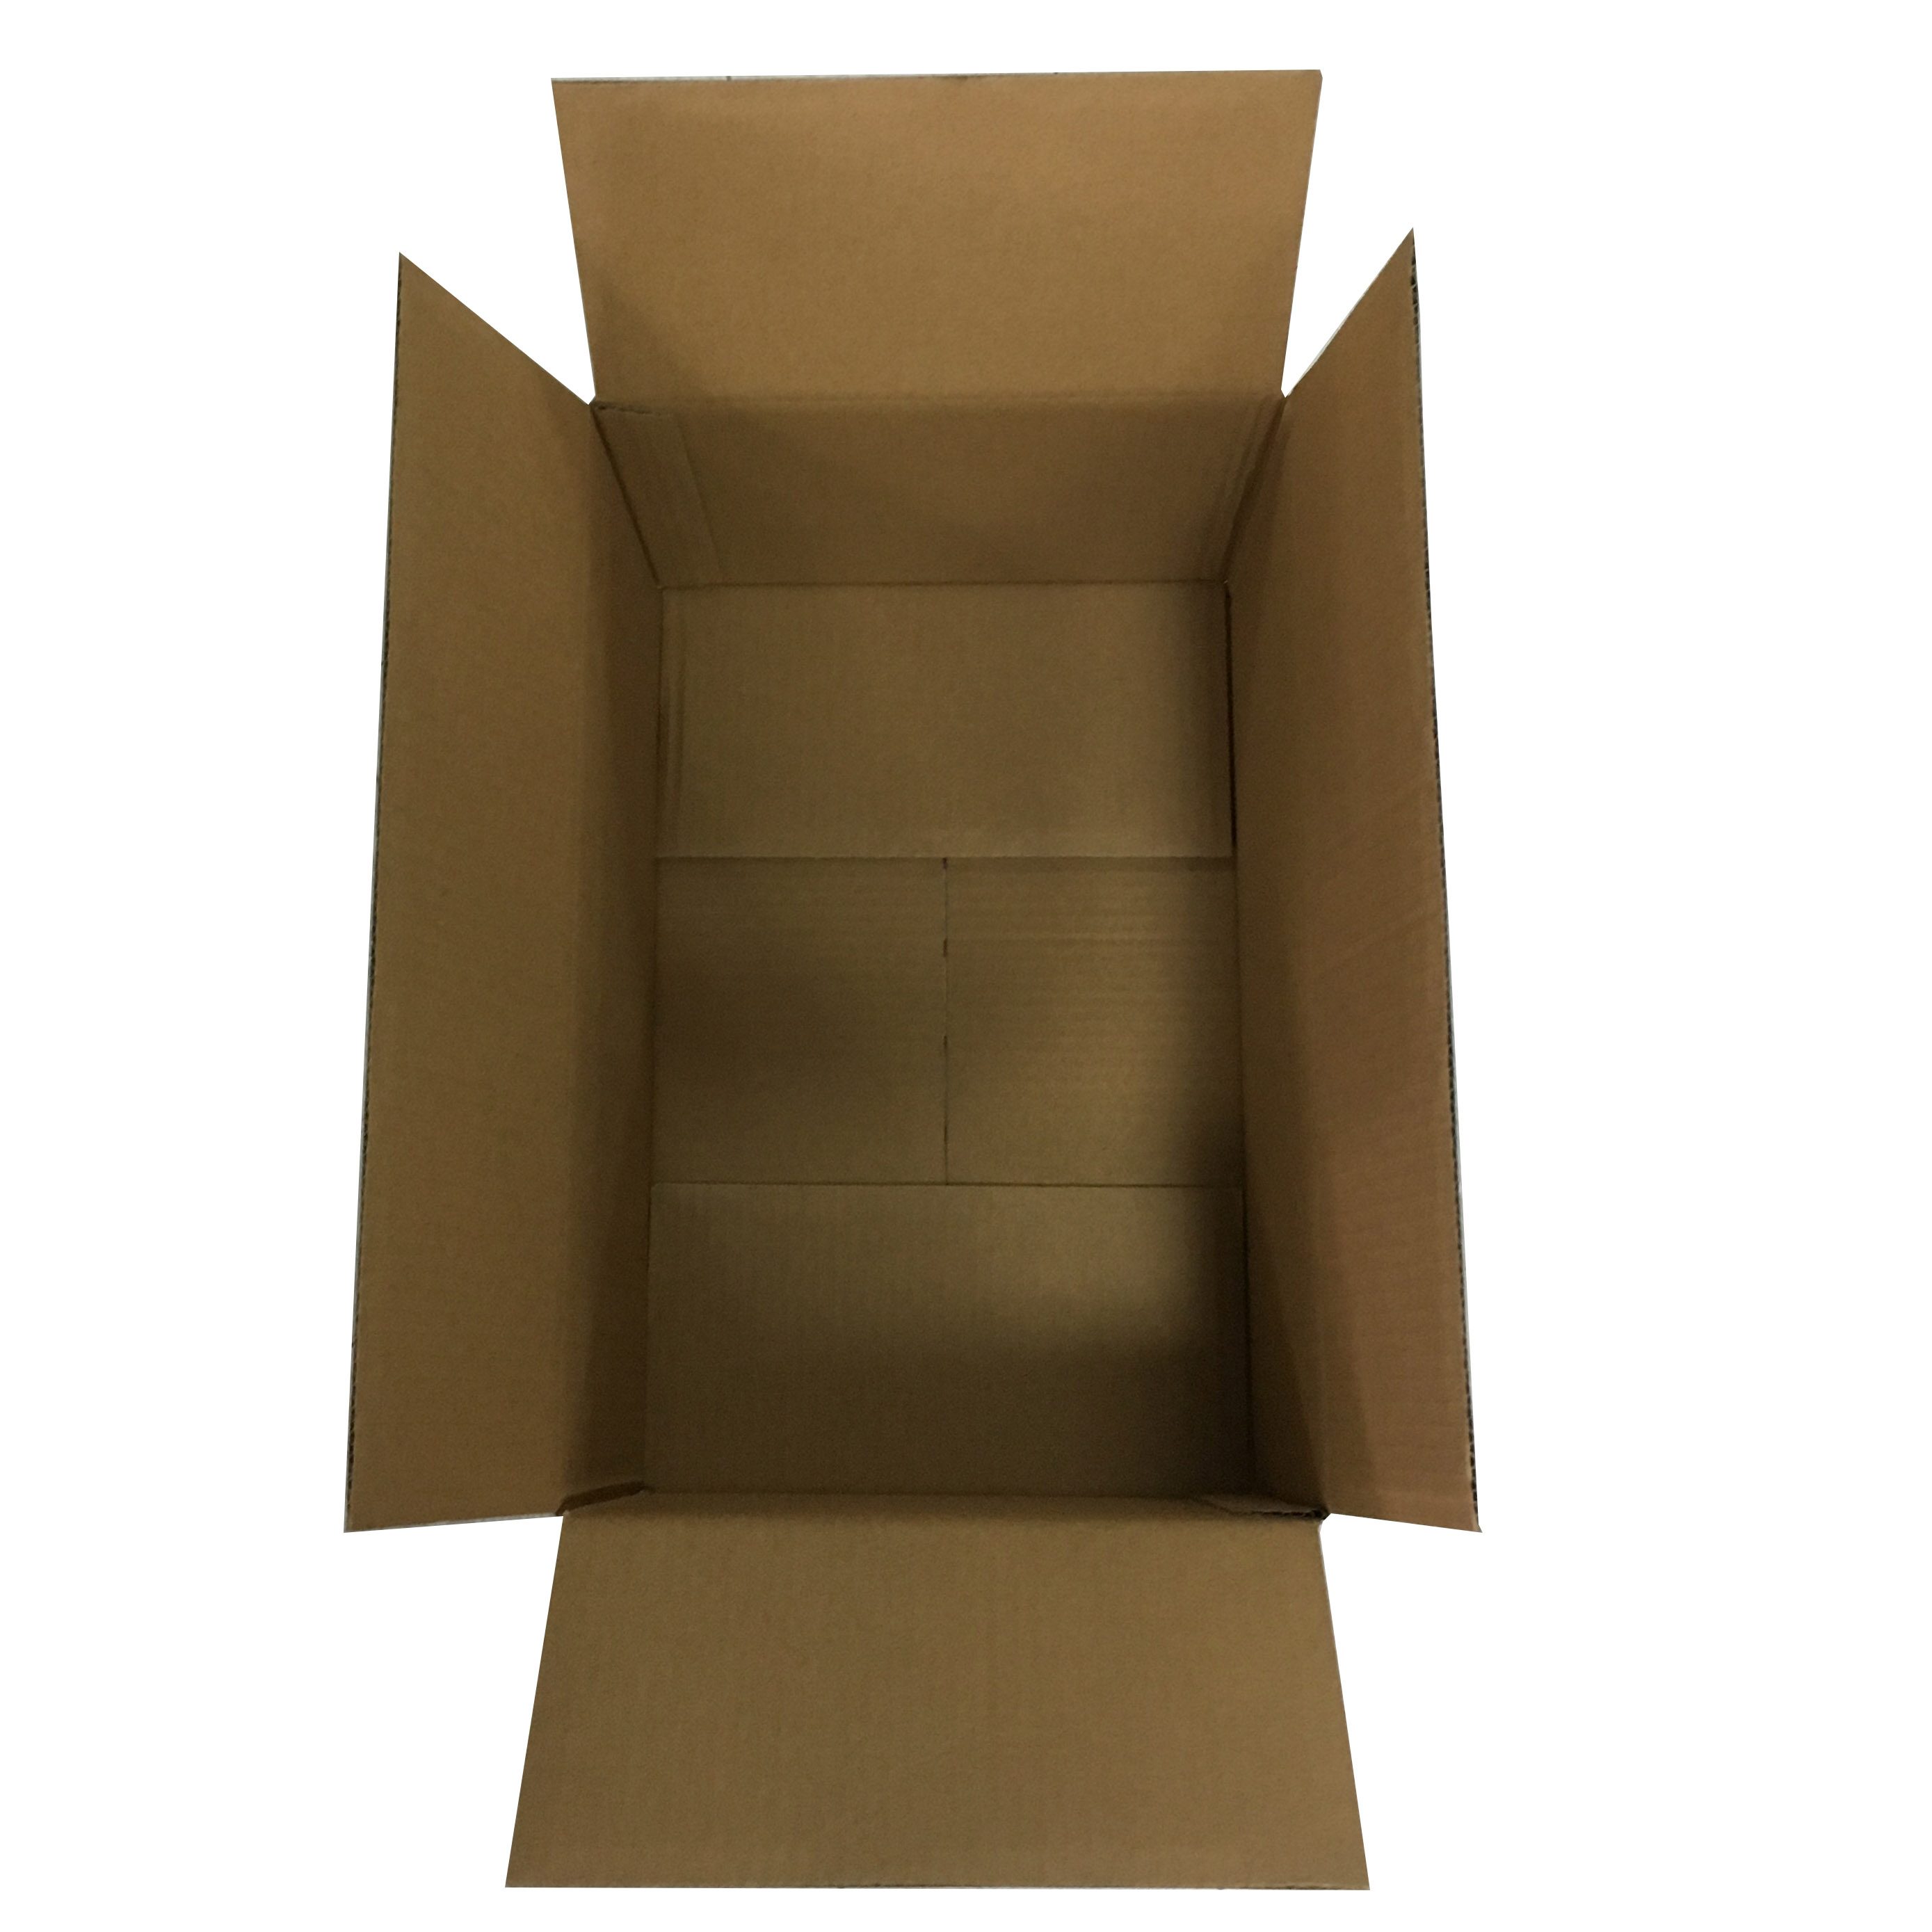 Sliderboot Packing Box